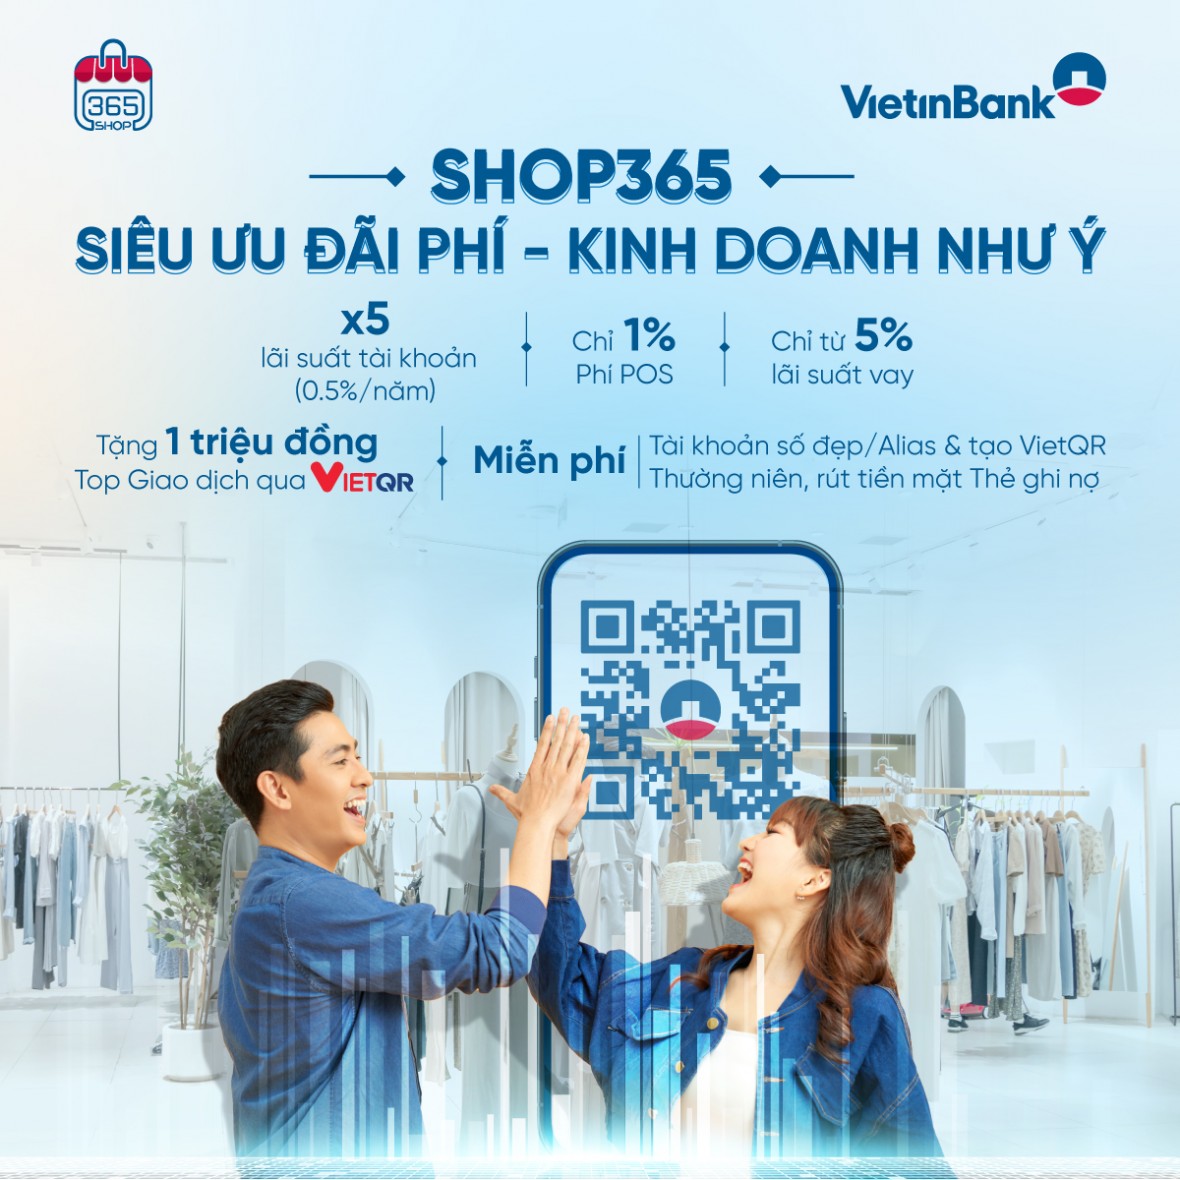 VietinBank ra mắt sản phẩm dành riêng cho khách hàng kinh doanh